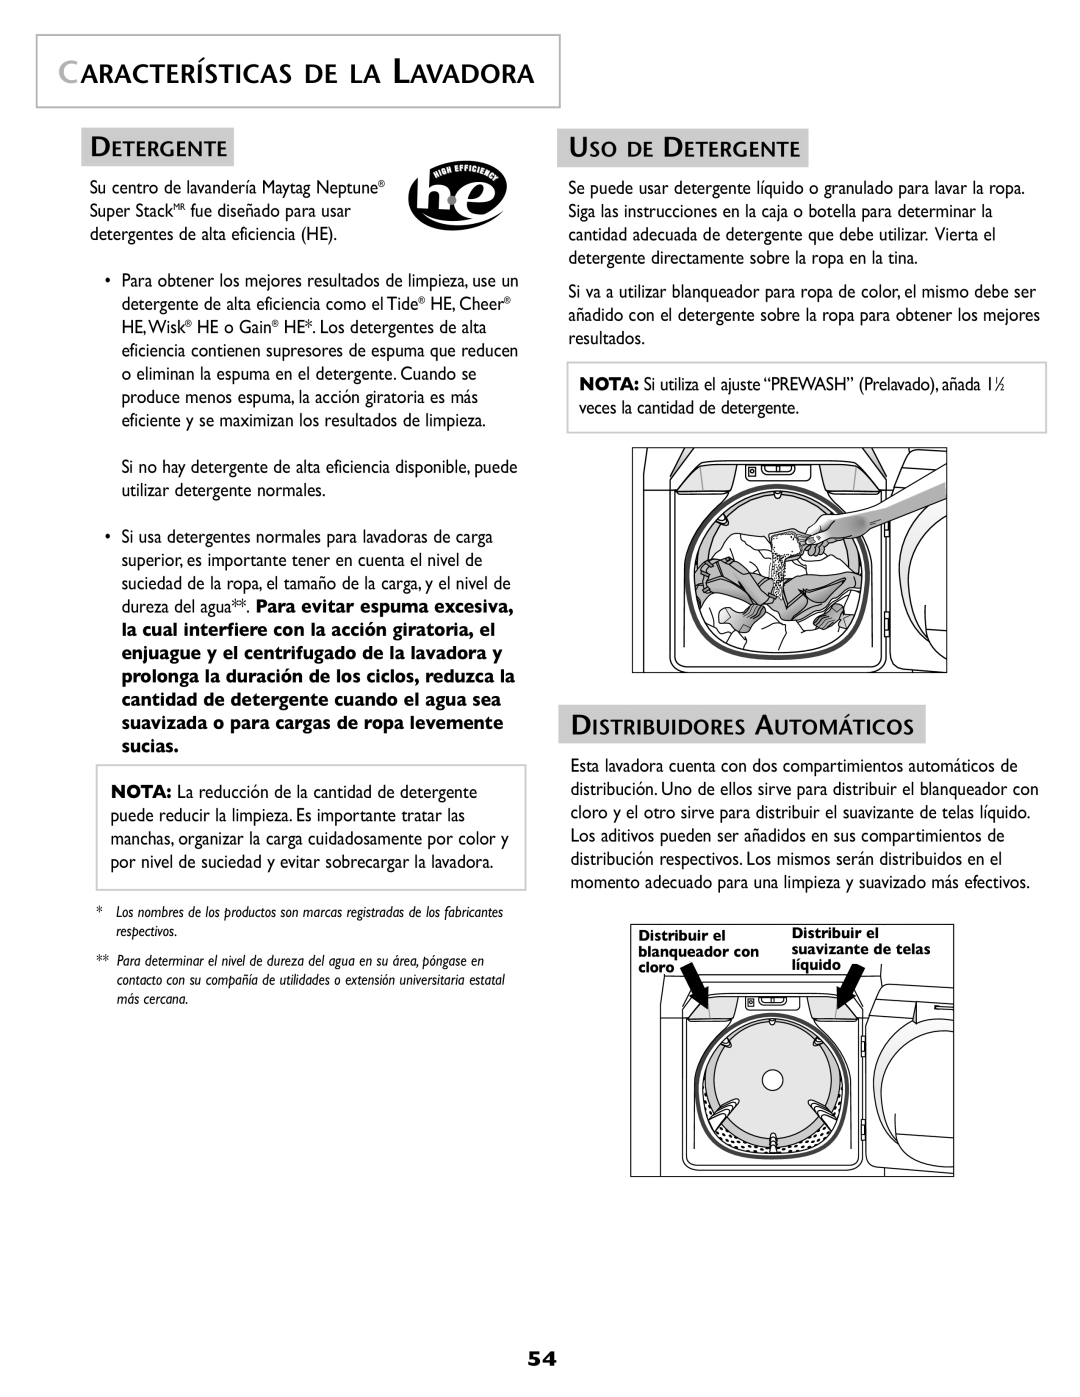 Maytag SL-3 important safety instructions Características De La Lavadora, Uso De Detergente, Distribuidores Automáticos 